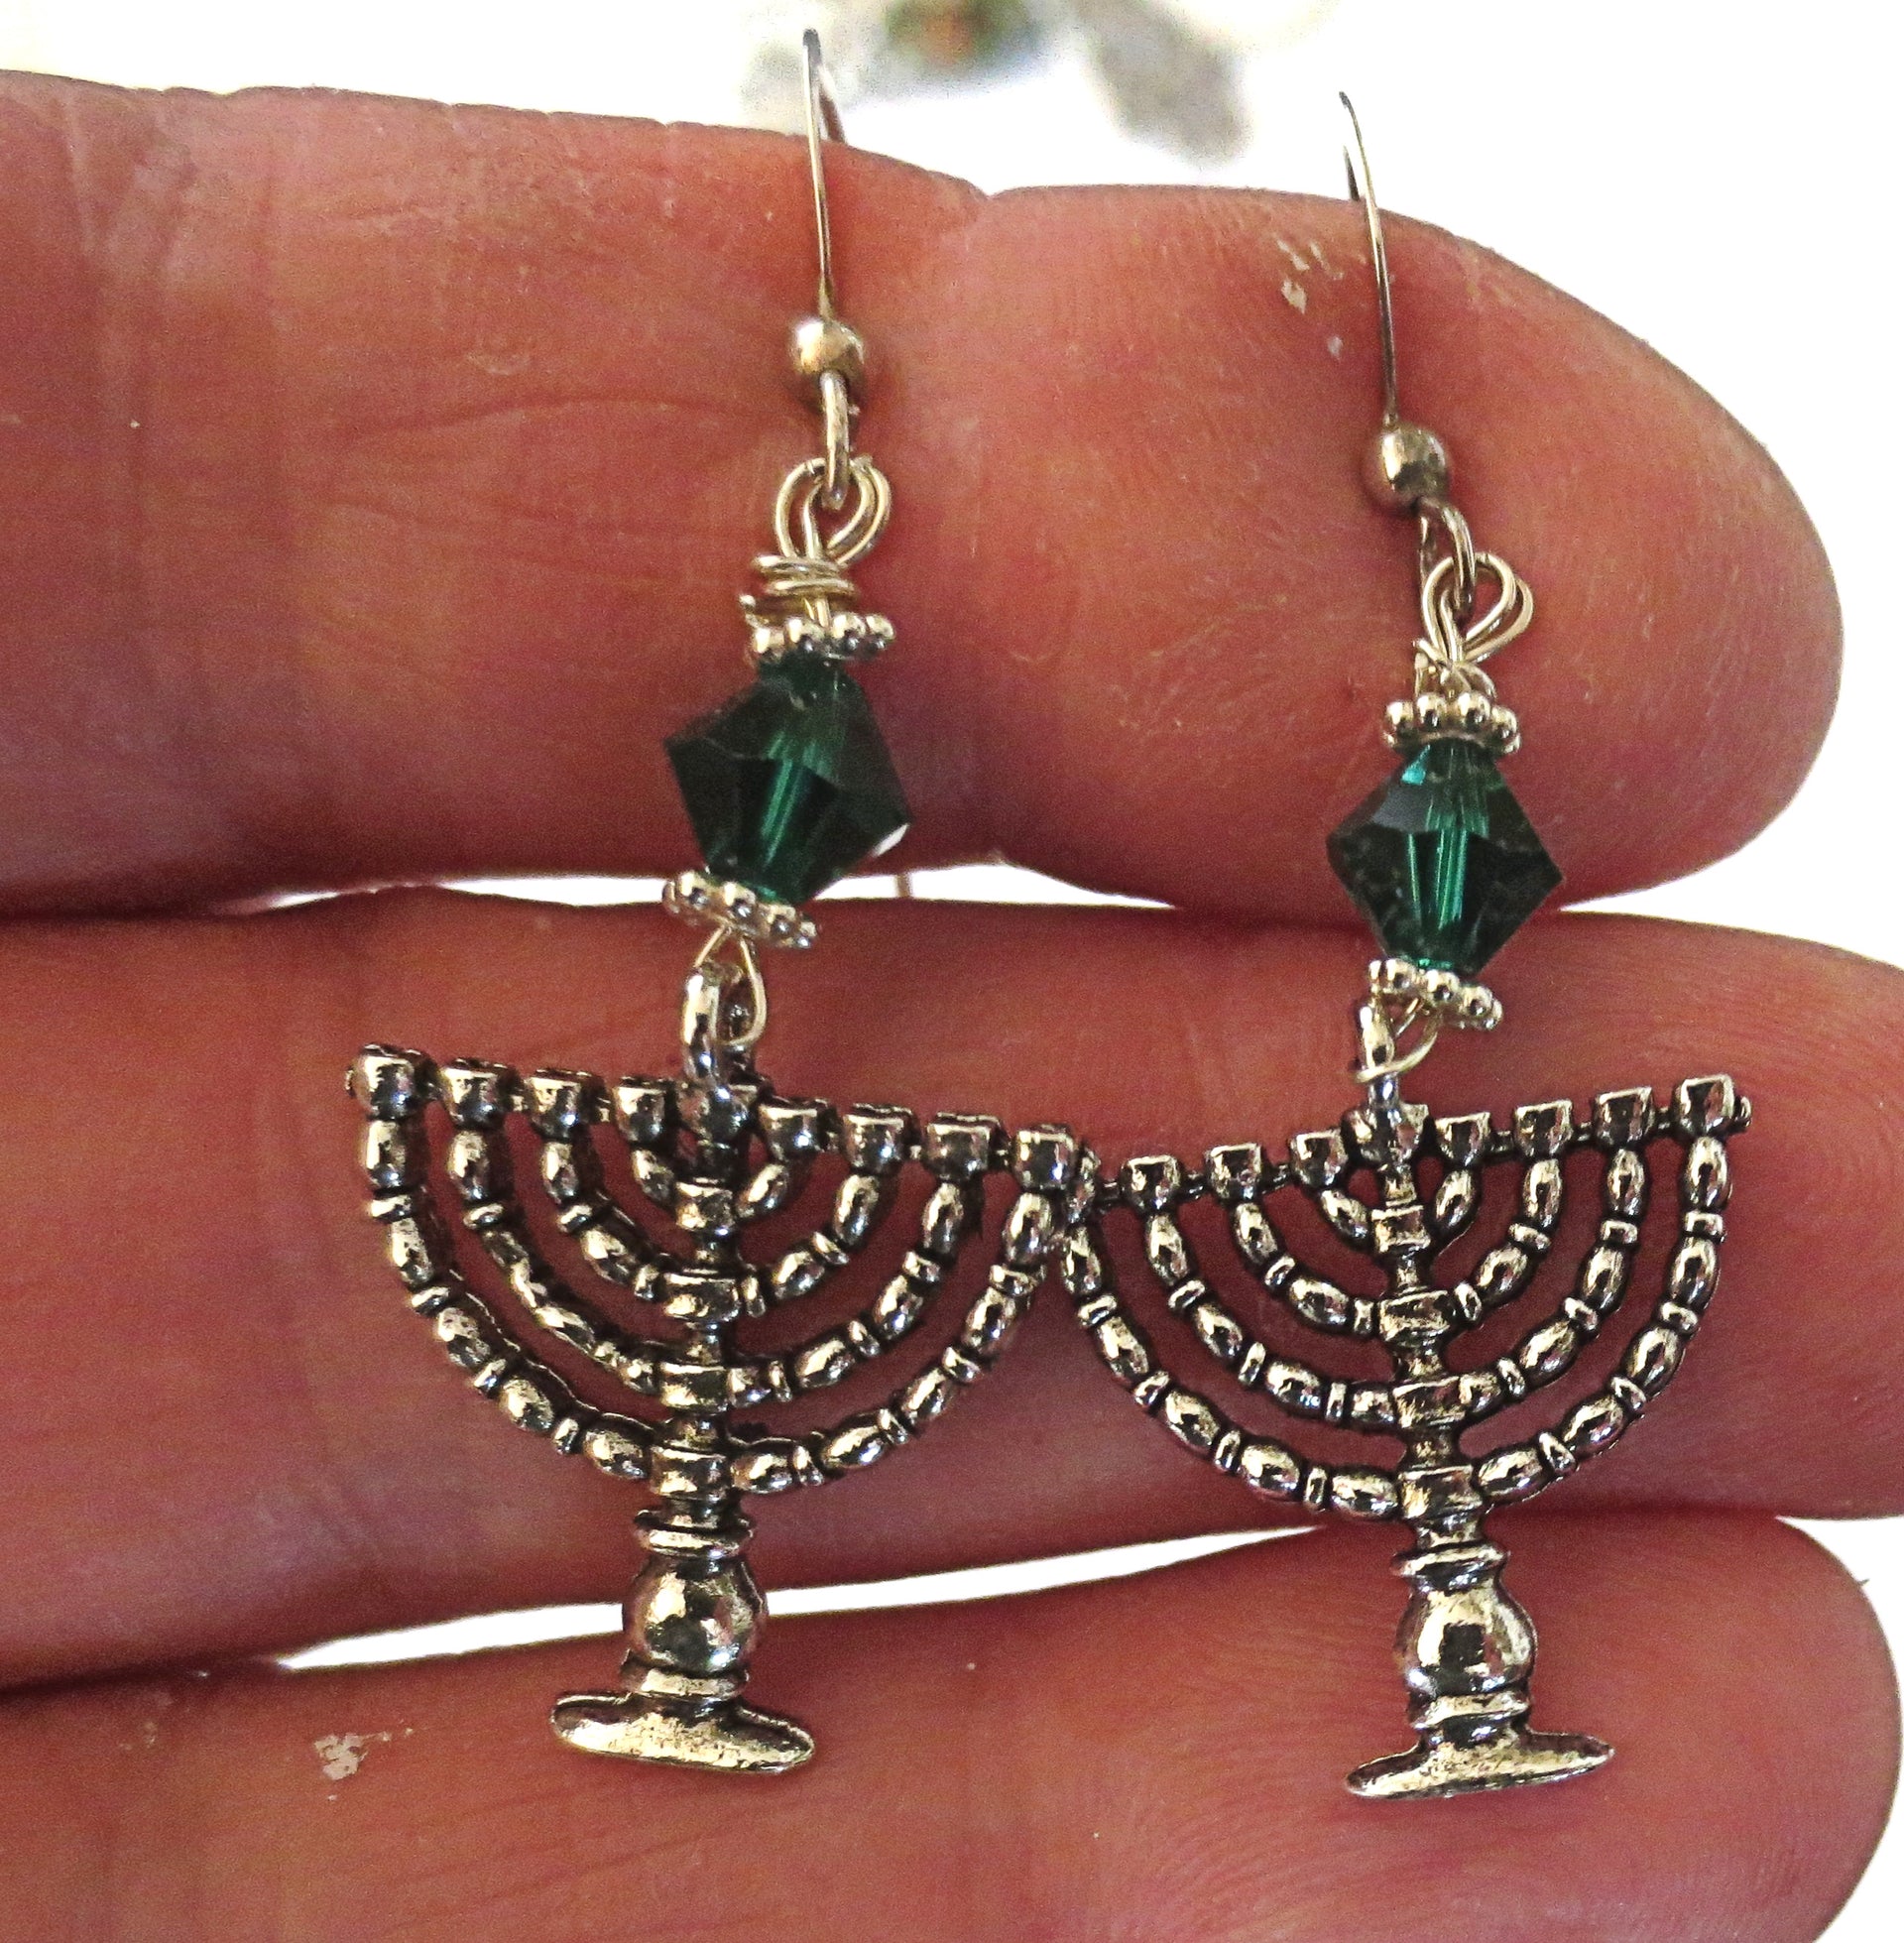 hanukkah or chanukah swarovski crystals silver earrings menorahs and dreidels sterling ear wires emerald bicones / menorahs / regular ear wires